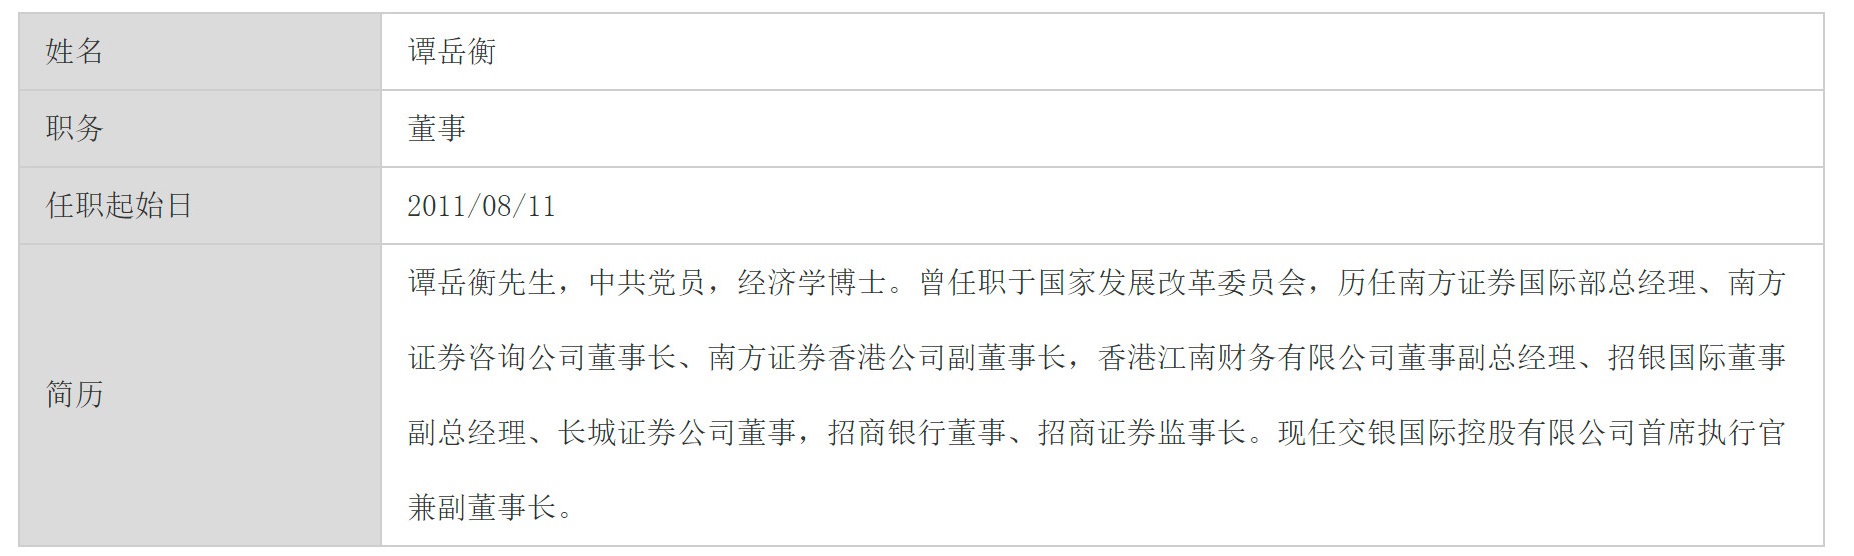 招商銀行「長城基金管理有限公司」網站的譚岳衡介紹顯示，他是「中共黨員」。（網站擷圖）